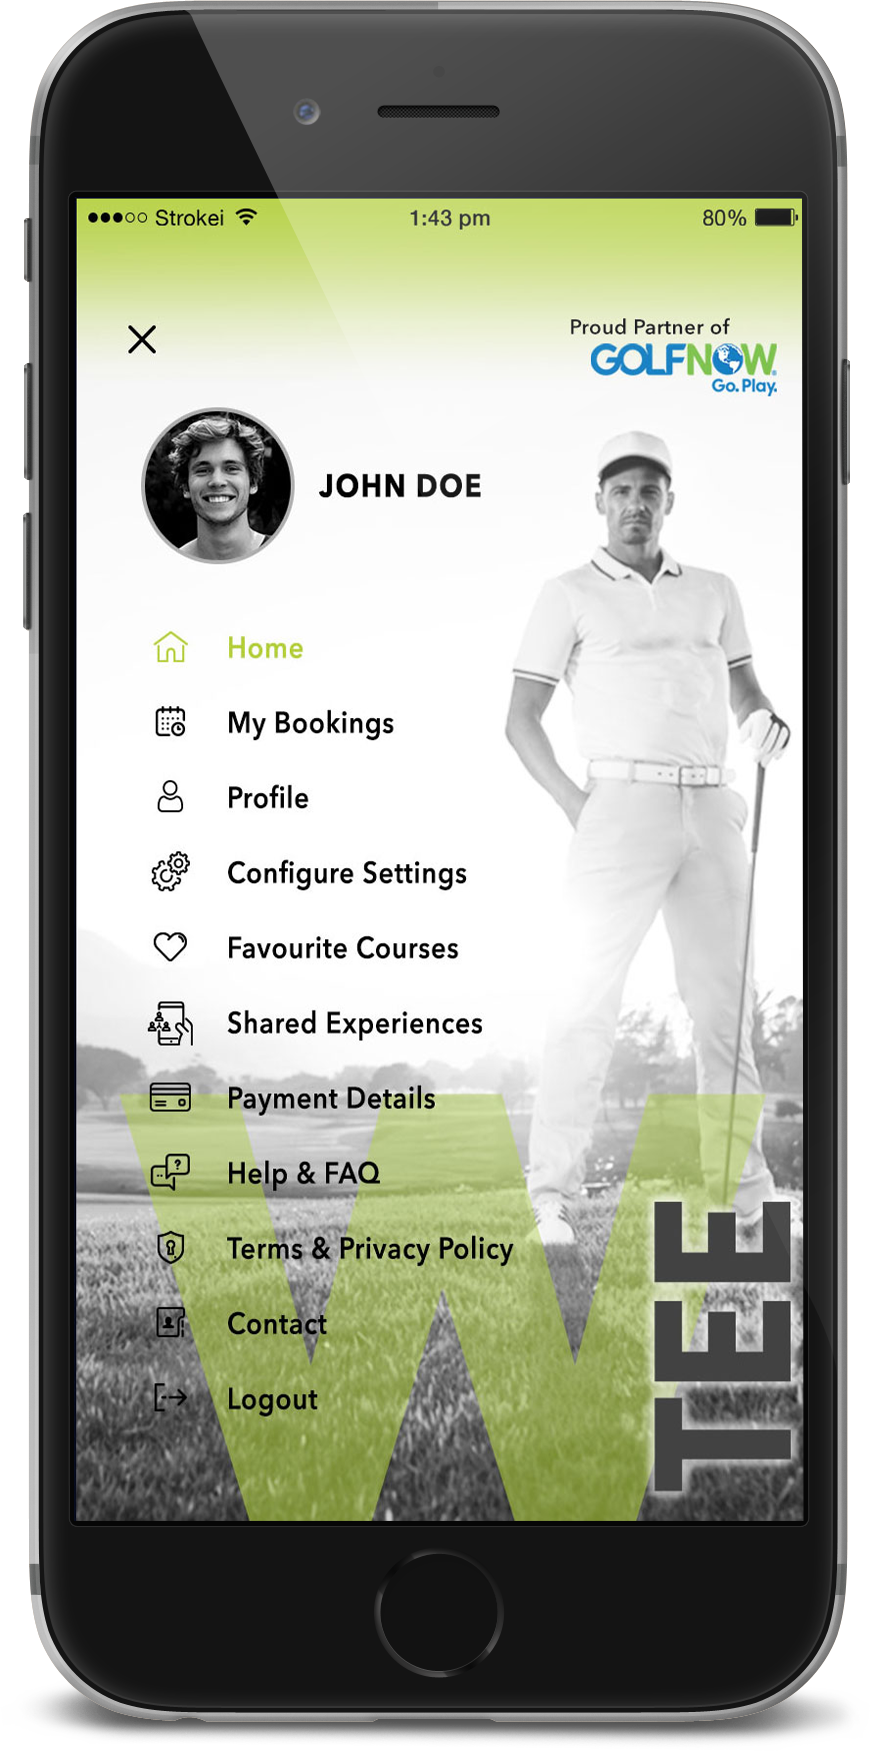 golf ground booking app